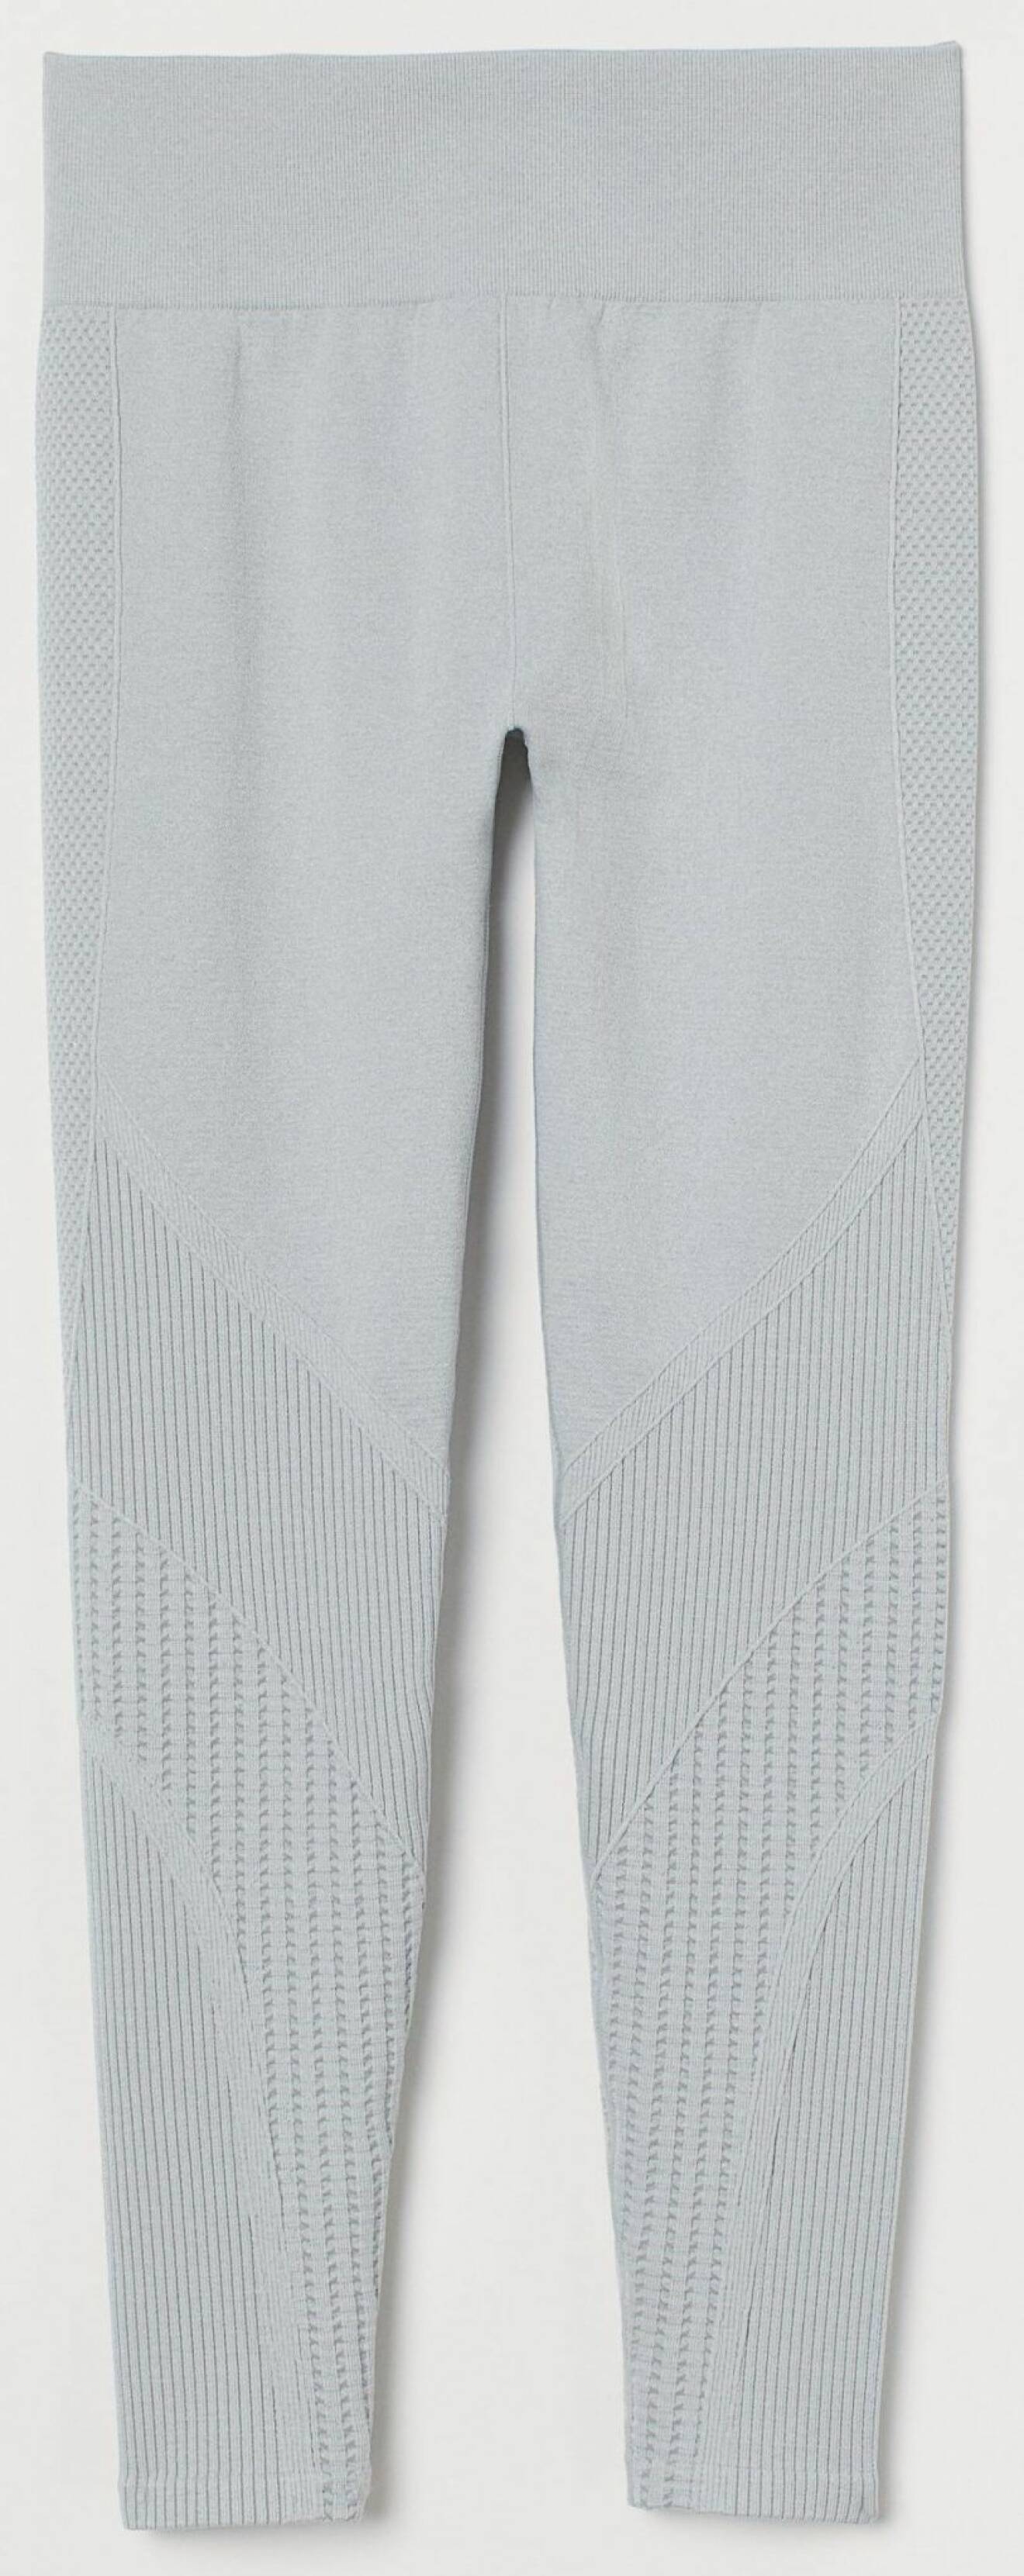 Sömlösa leggings från H&M i grå nyans.